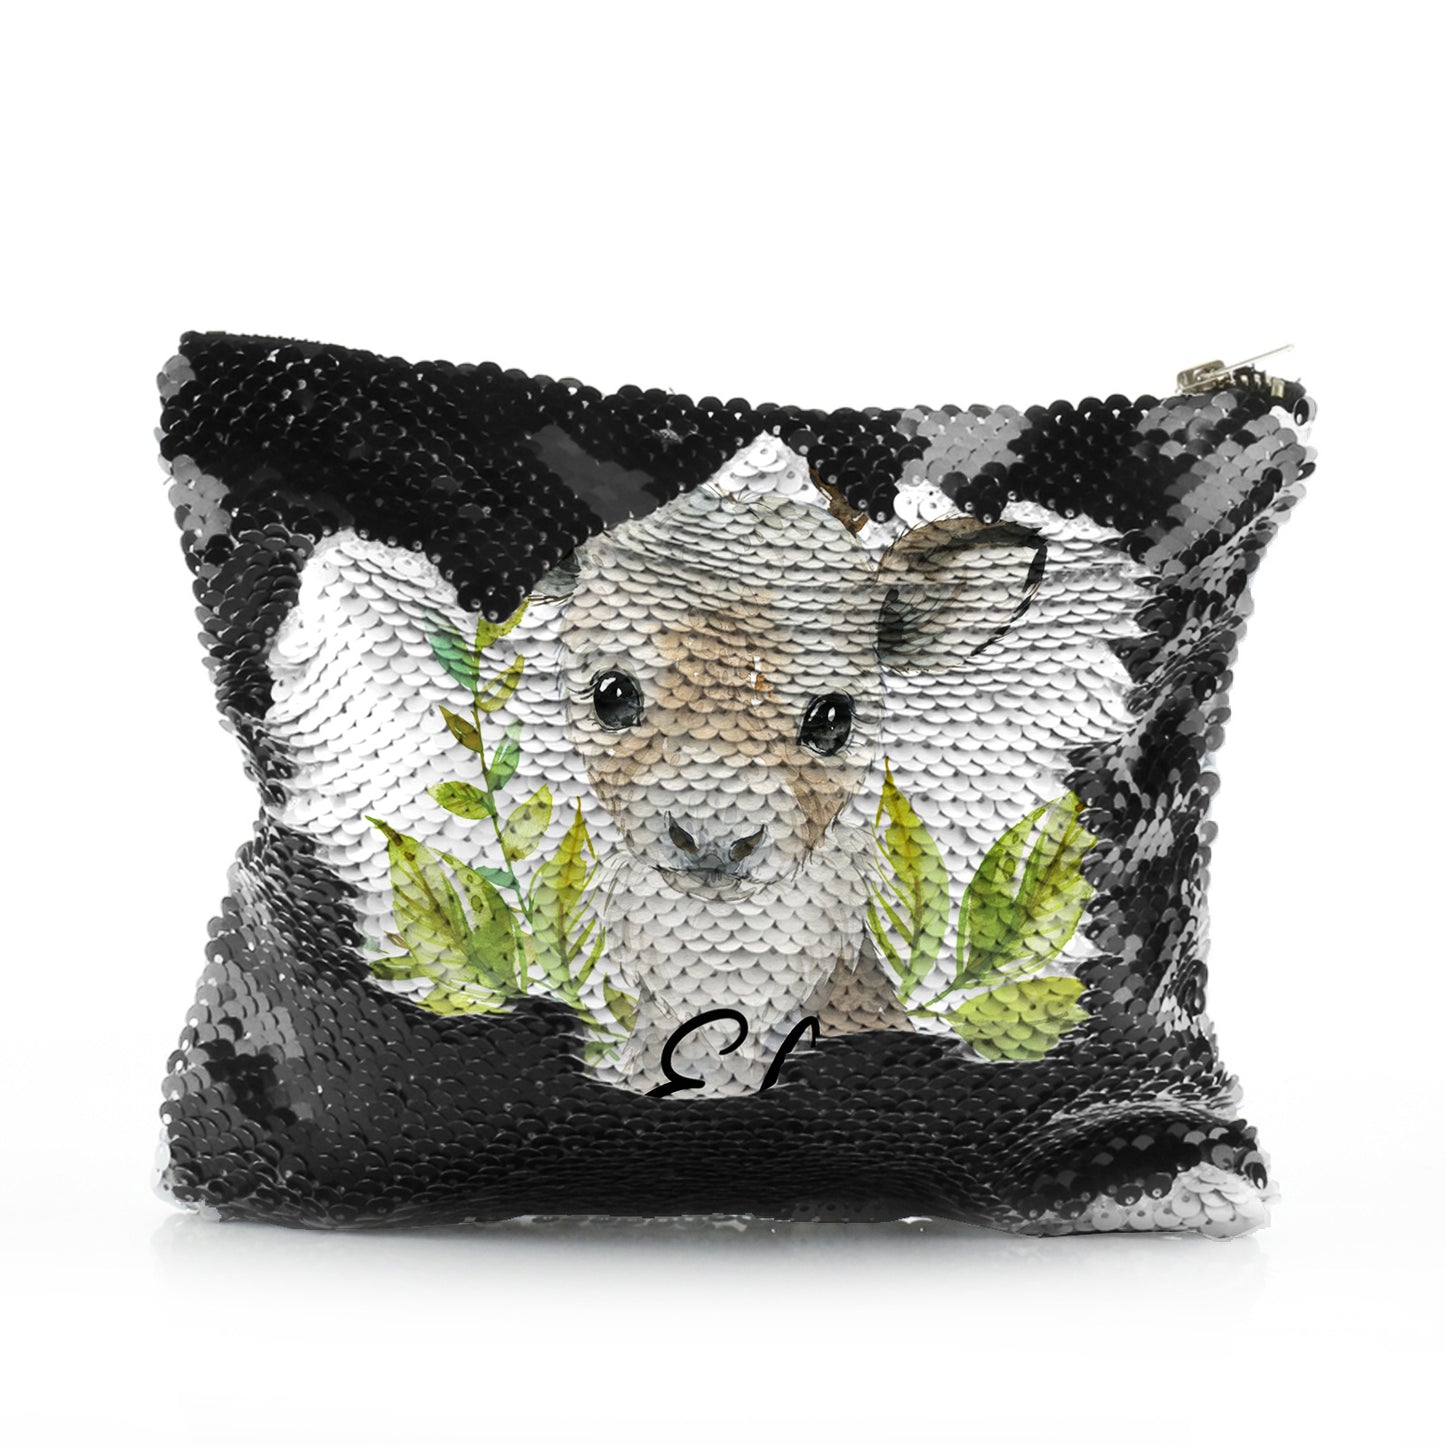 Personalised Sequin Zip Bag with Christmas Reindeer Deer Green Leaves and Cute Text